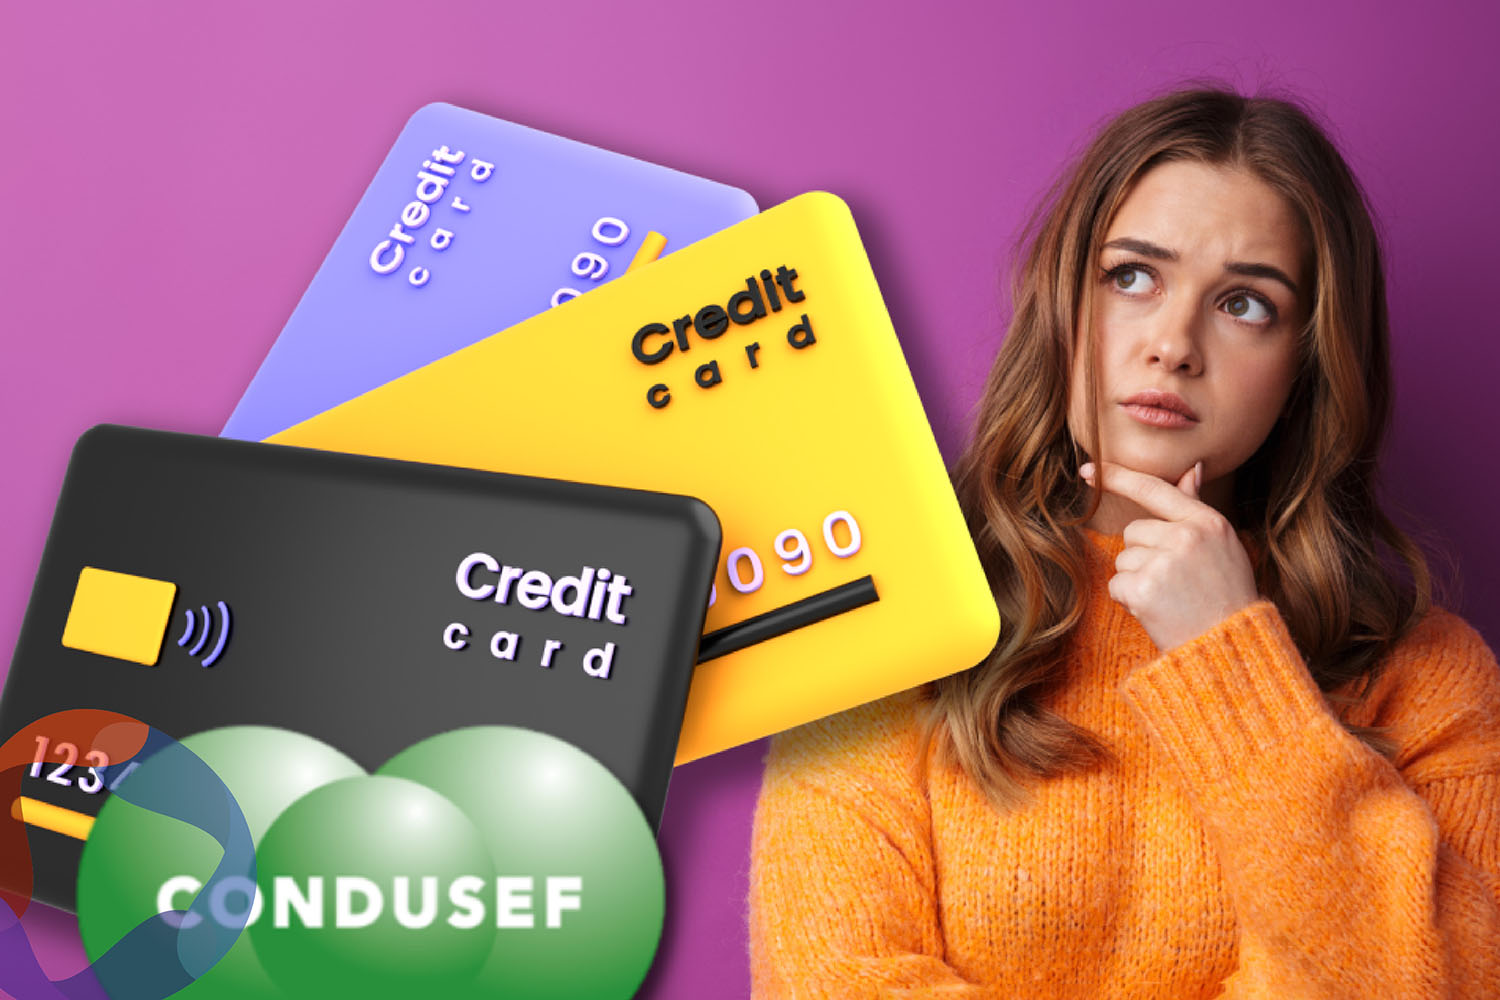 ¿Cómo elegir la tarjeta de crédito adecuada? Condusef revela elementos clave que debes de conocer antes de decidir